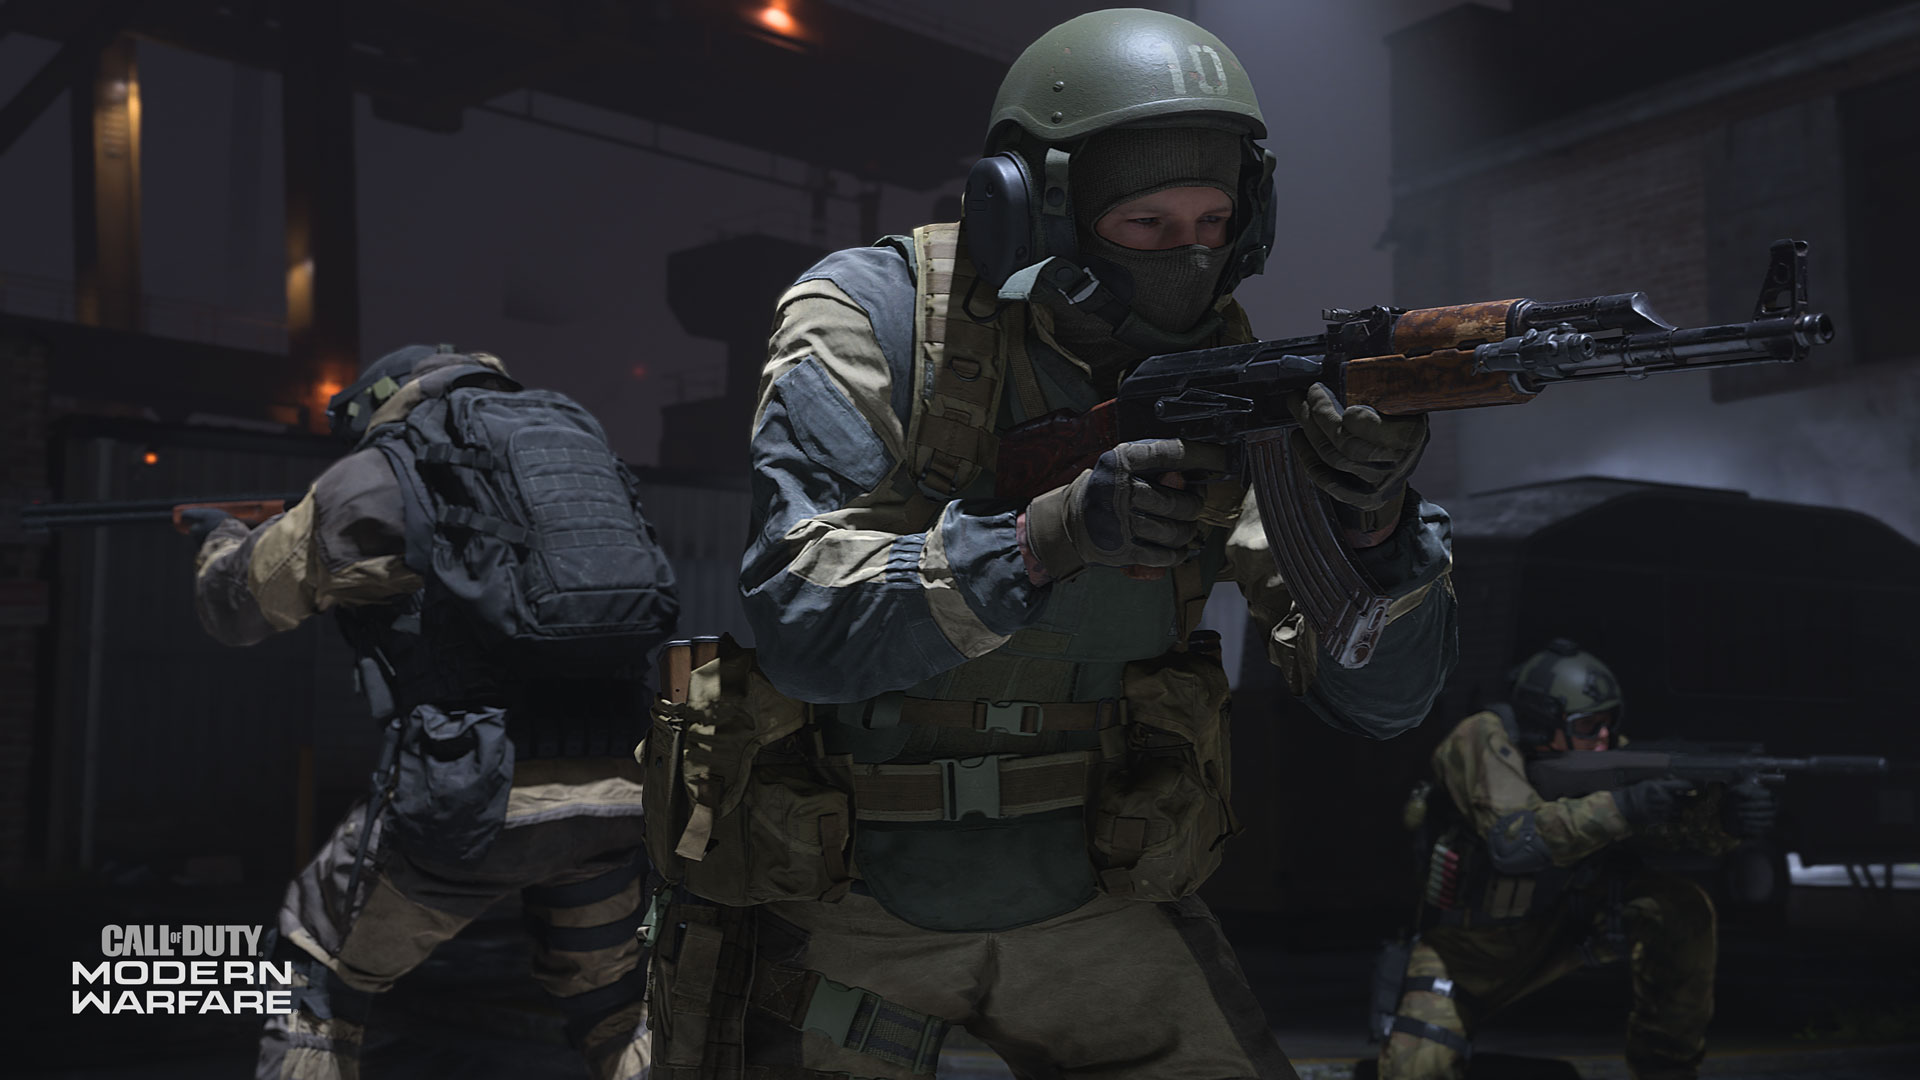 Call-of-Duty-Modern-Warfare-Screenshots-2